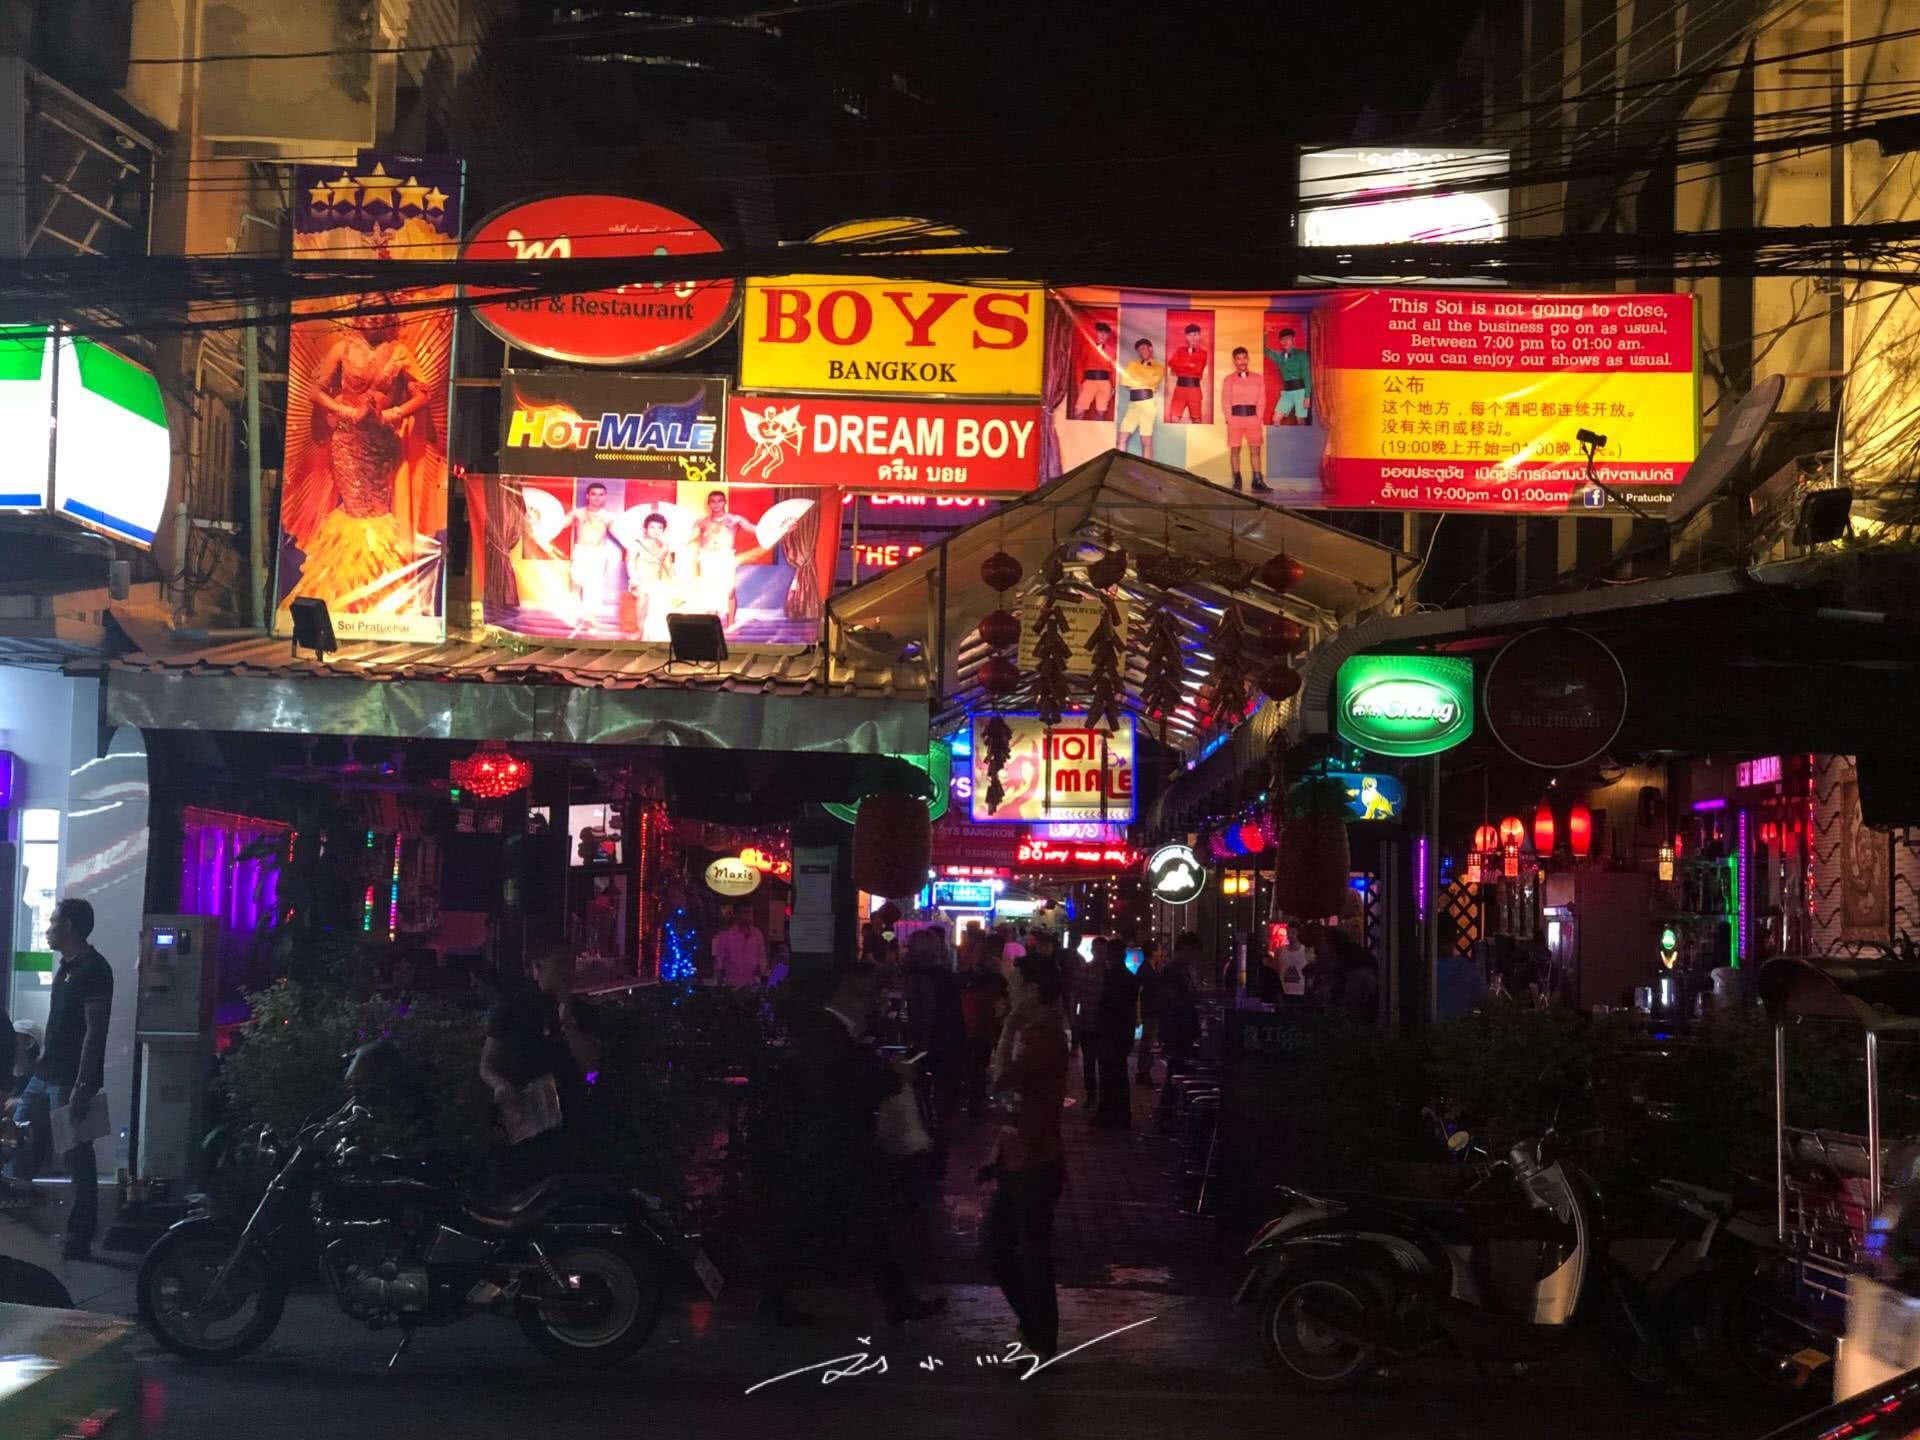 泰国性服务者为工作合法化游街！称“我们不是在卖淫！是为国家冲GDP” - 知乎